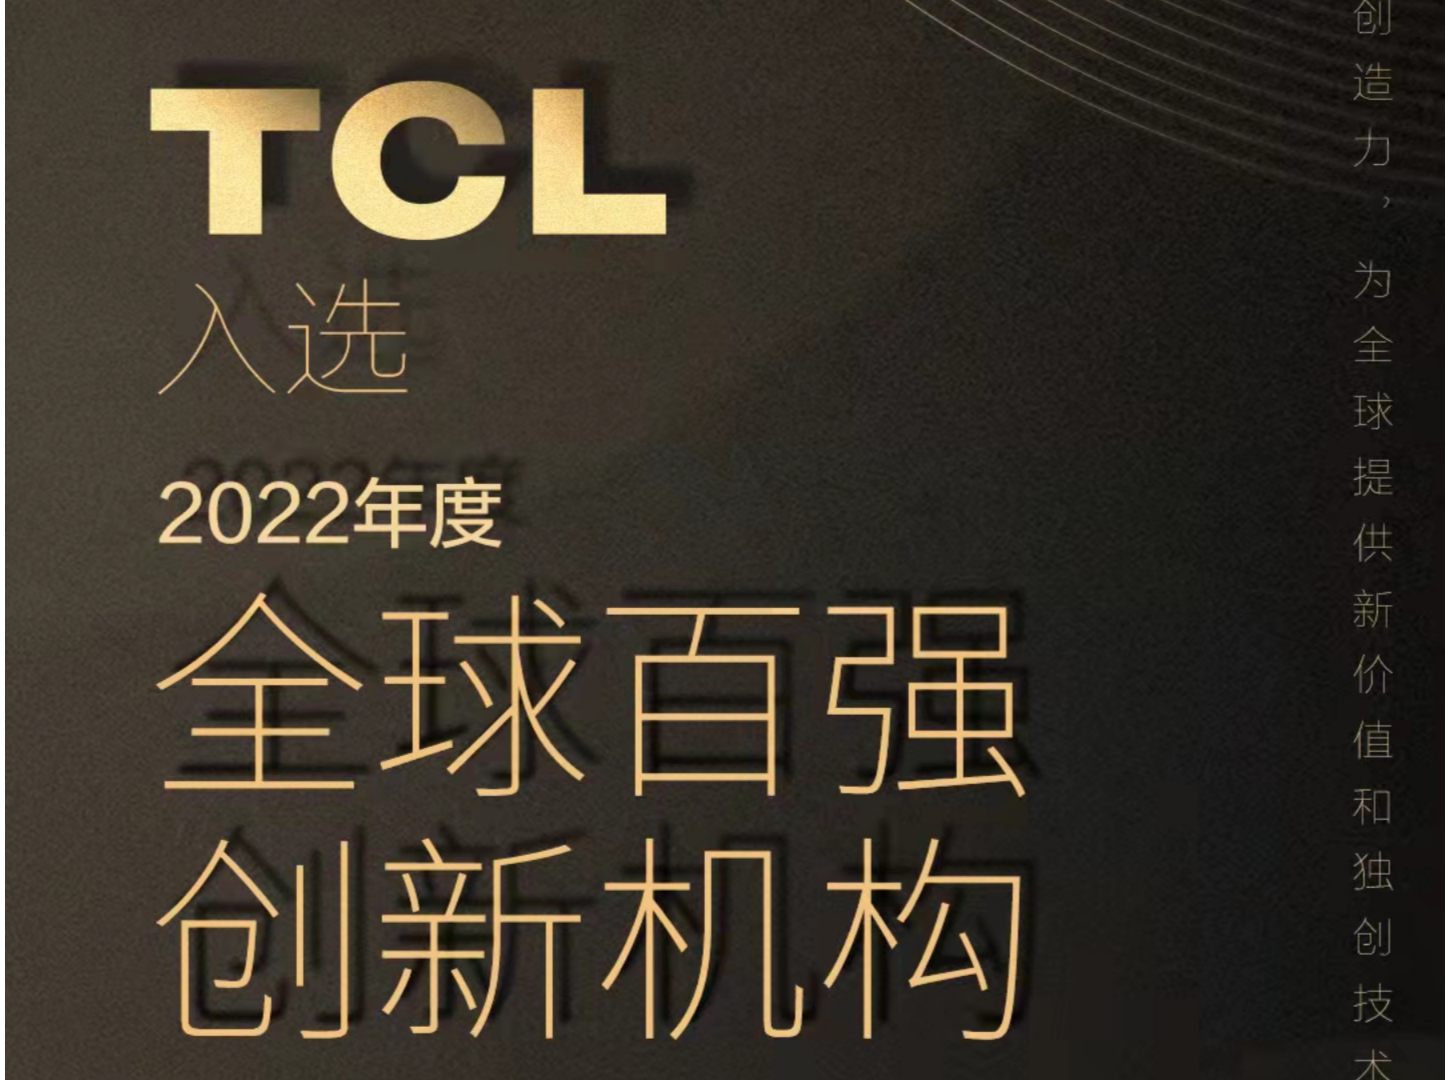 TCL入选“全球百强创新机构”榜单，为全球提供新价值和独创技术